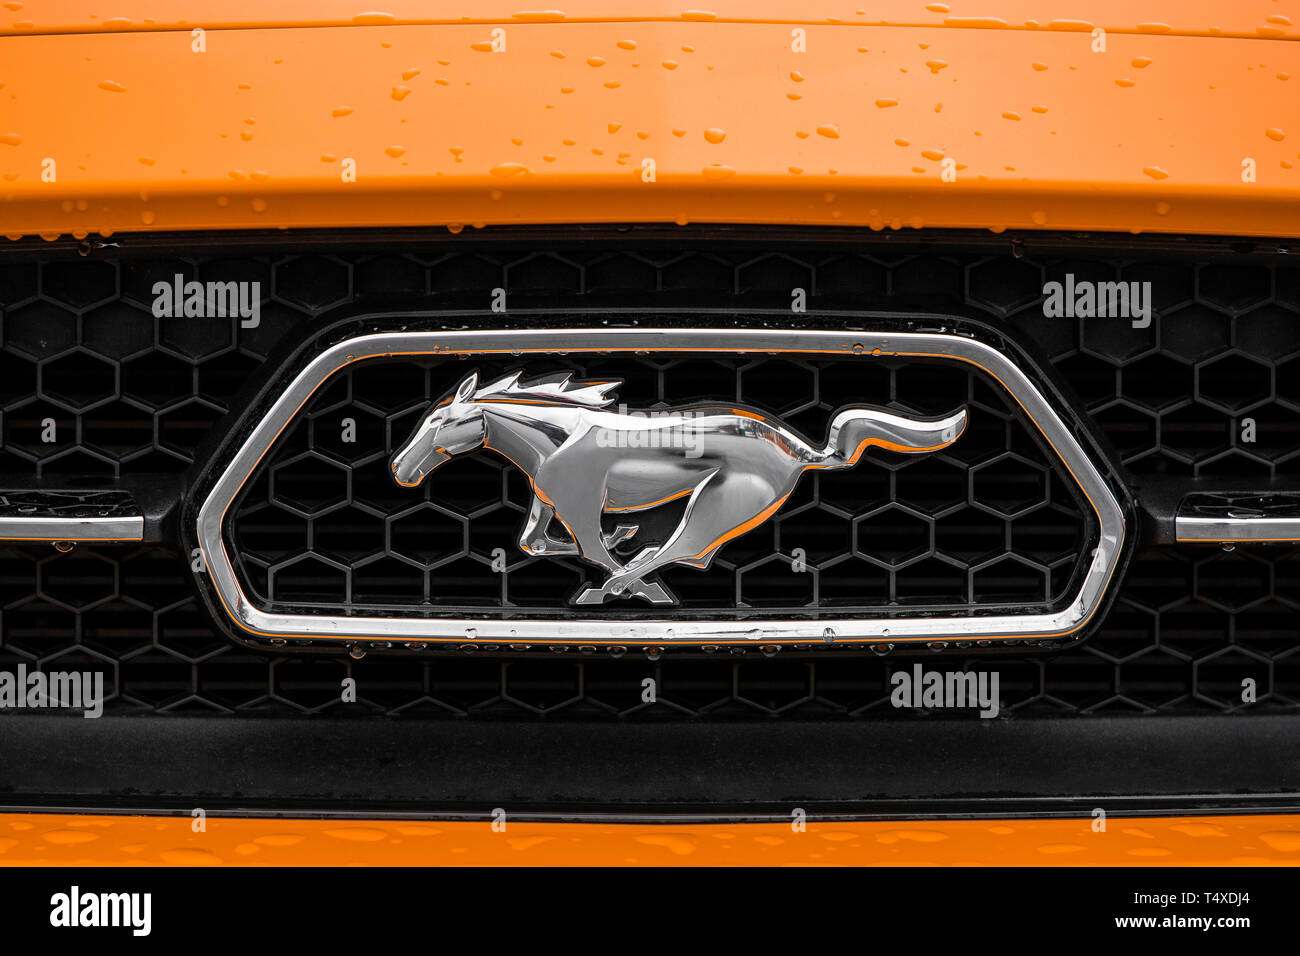 La parrilla delantera y el logotipo de una naranja 2015 Ford Mustang 50 aniversario con gotas de agua sobre el coche. Foto de stock